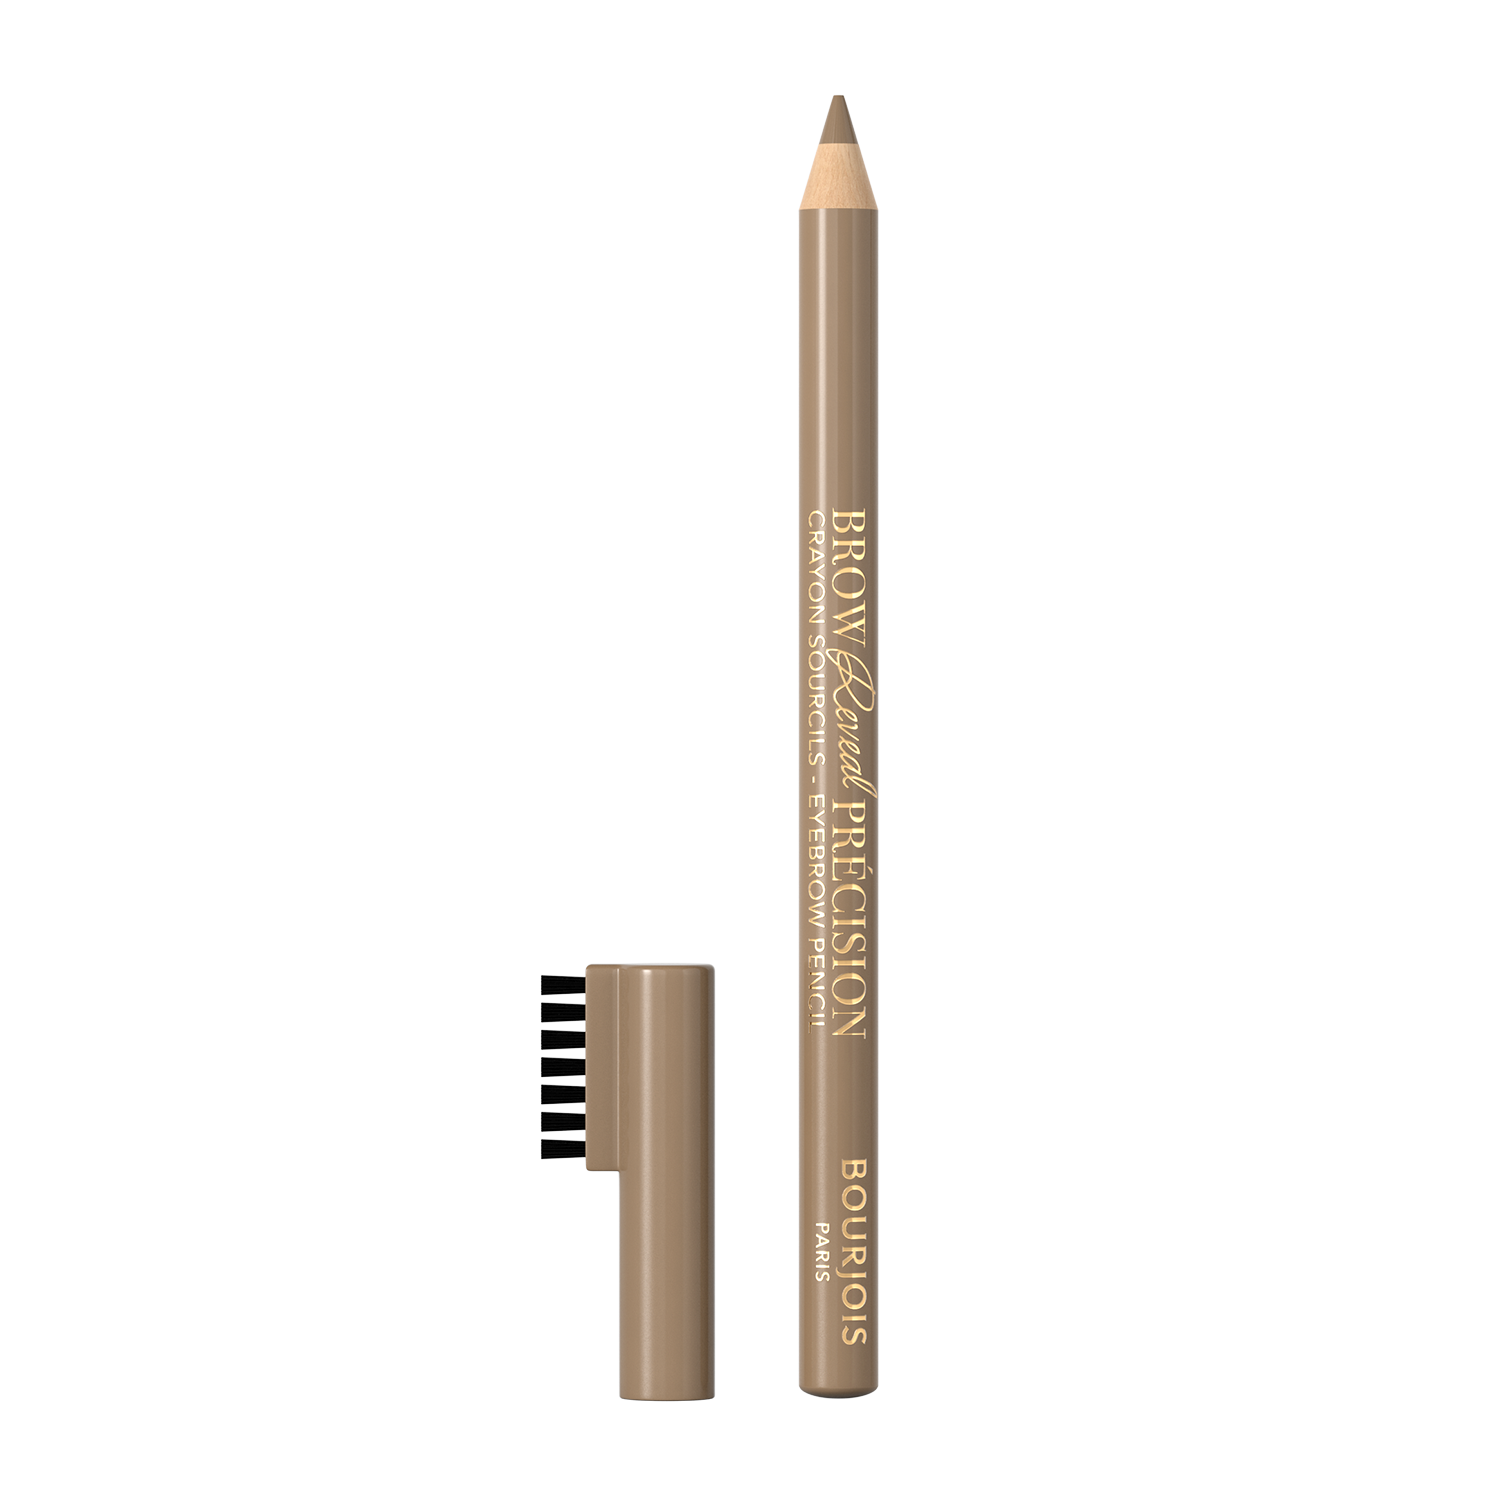 Олівець для брів Bourjois Brow Reveal Precision Blond тон 001, 1.4 г (8000019760396) - фото 2